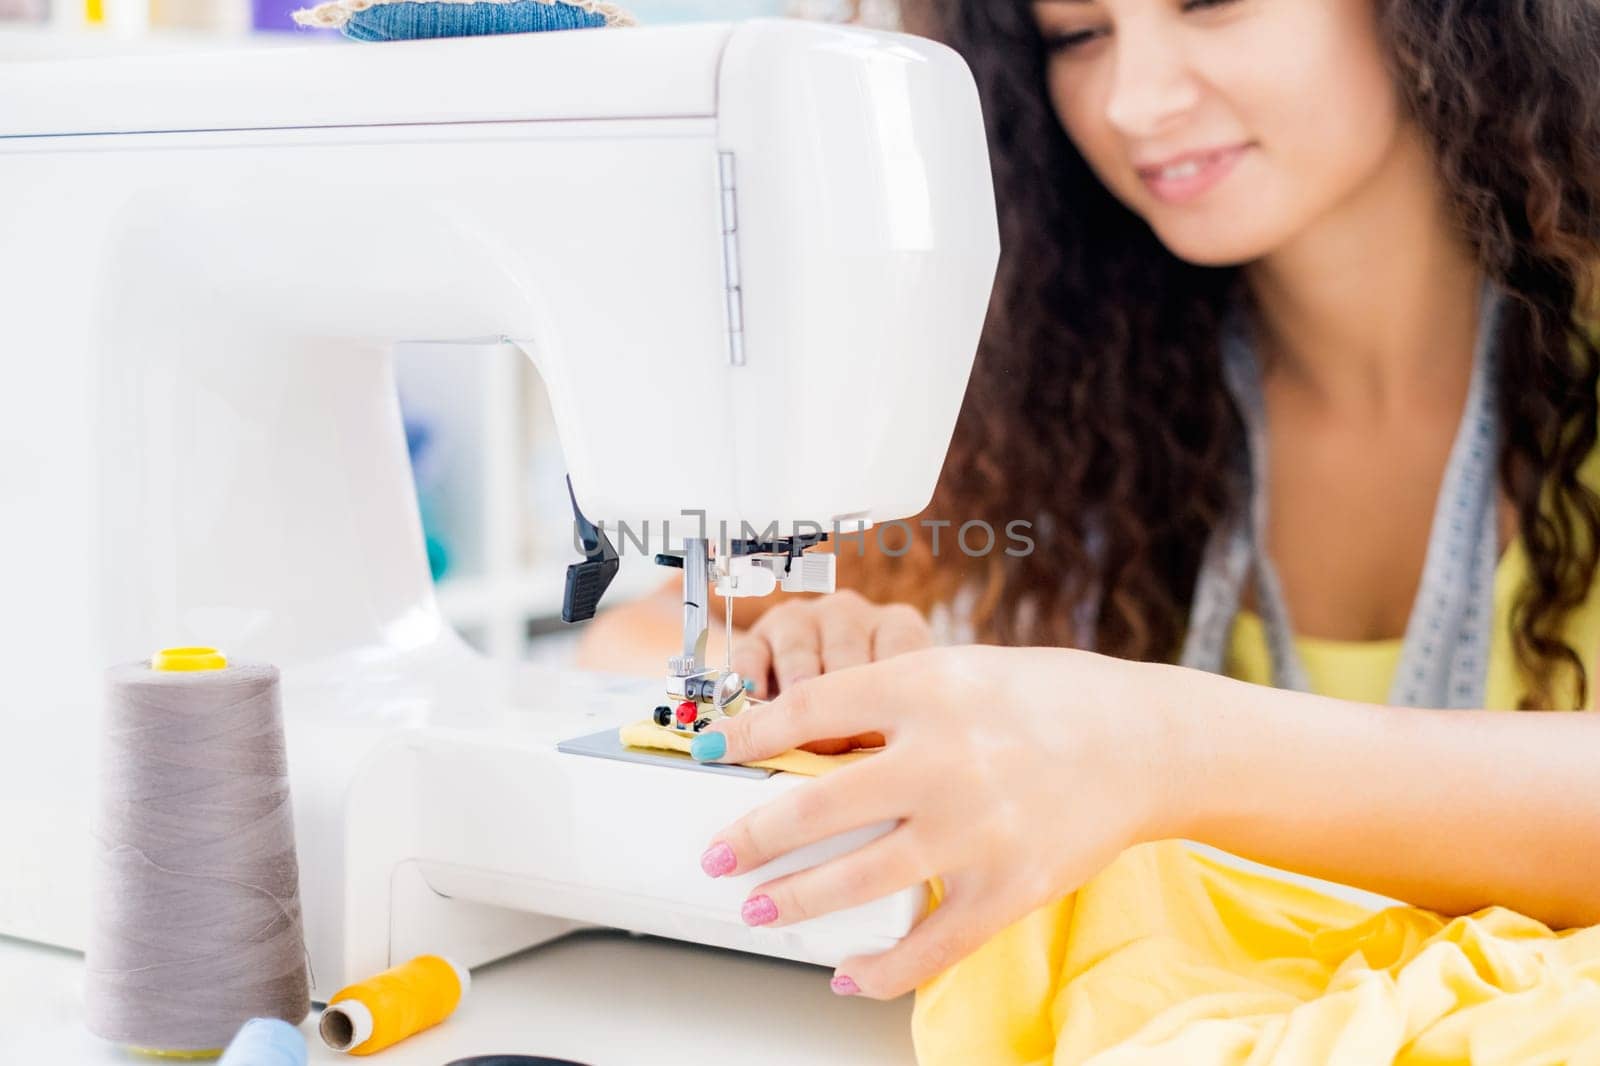 Female hands on sewing machine by GekaSkr